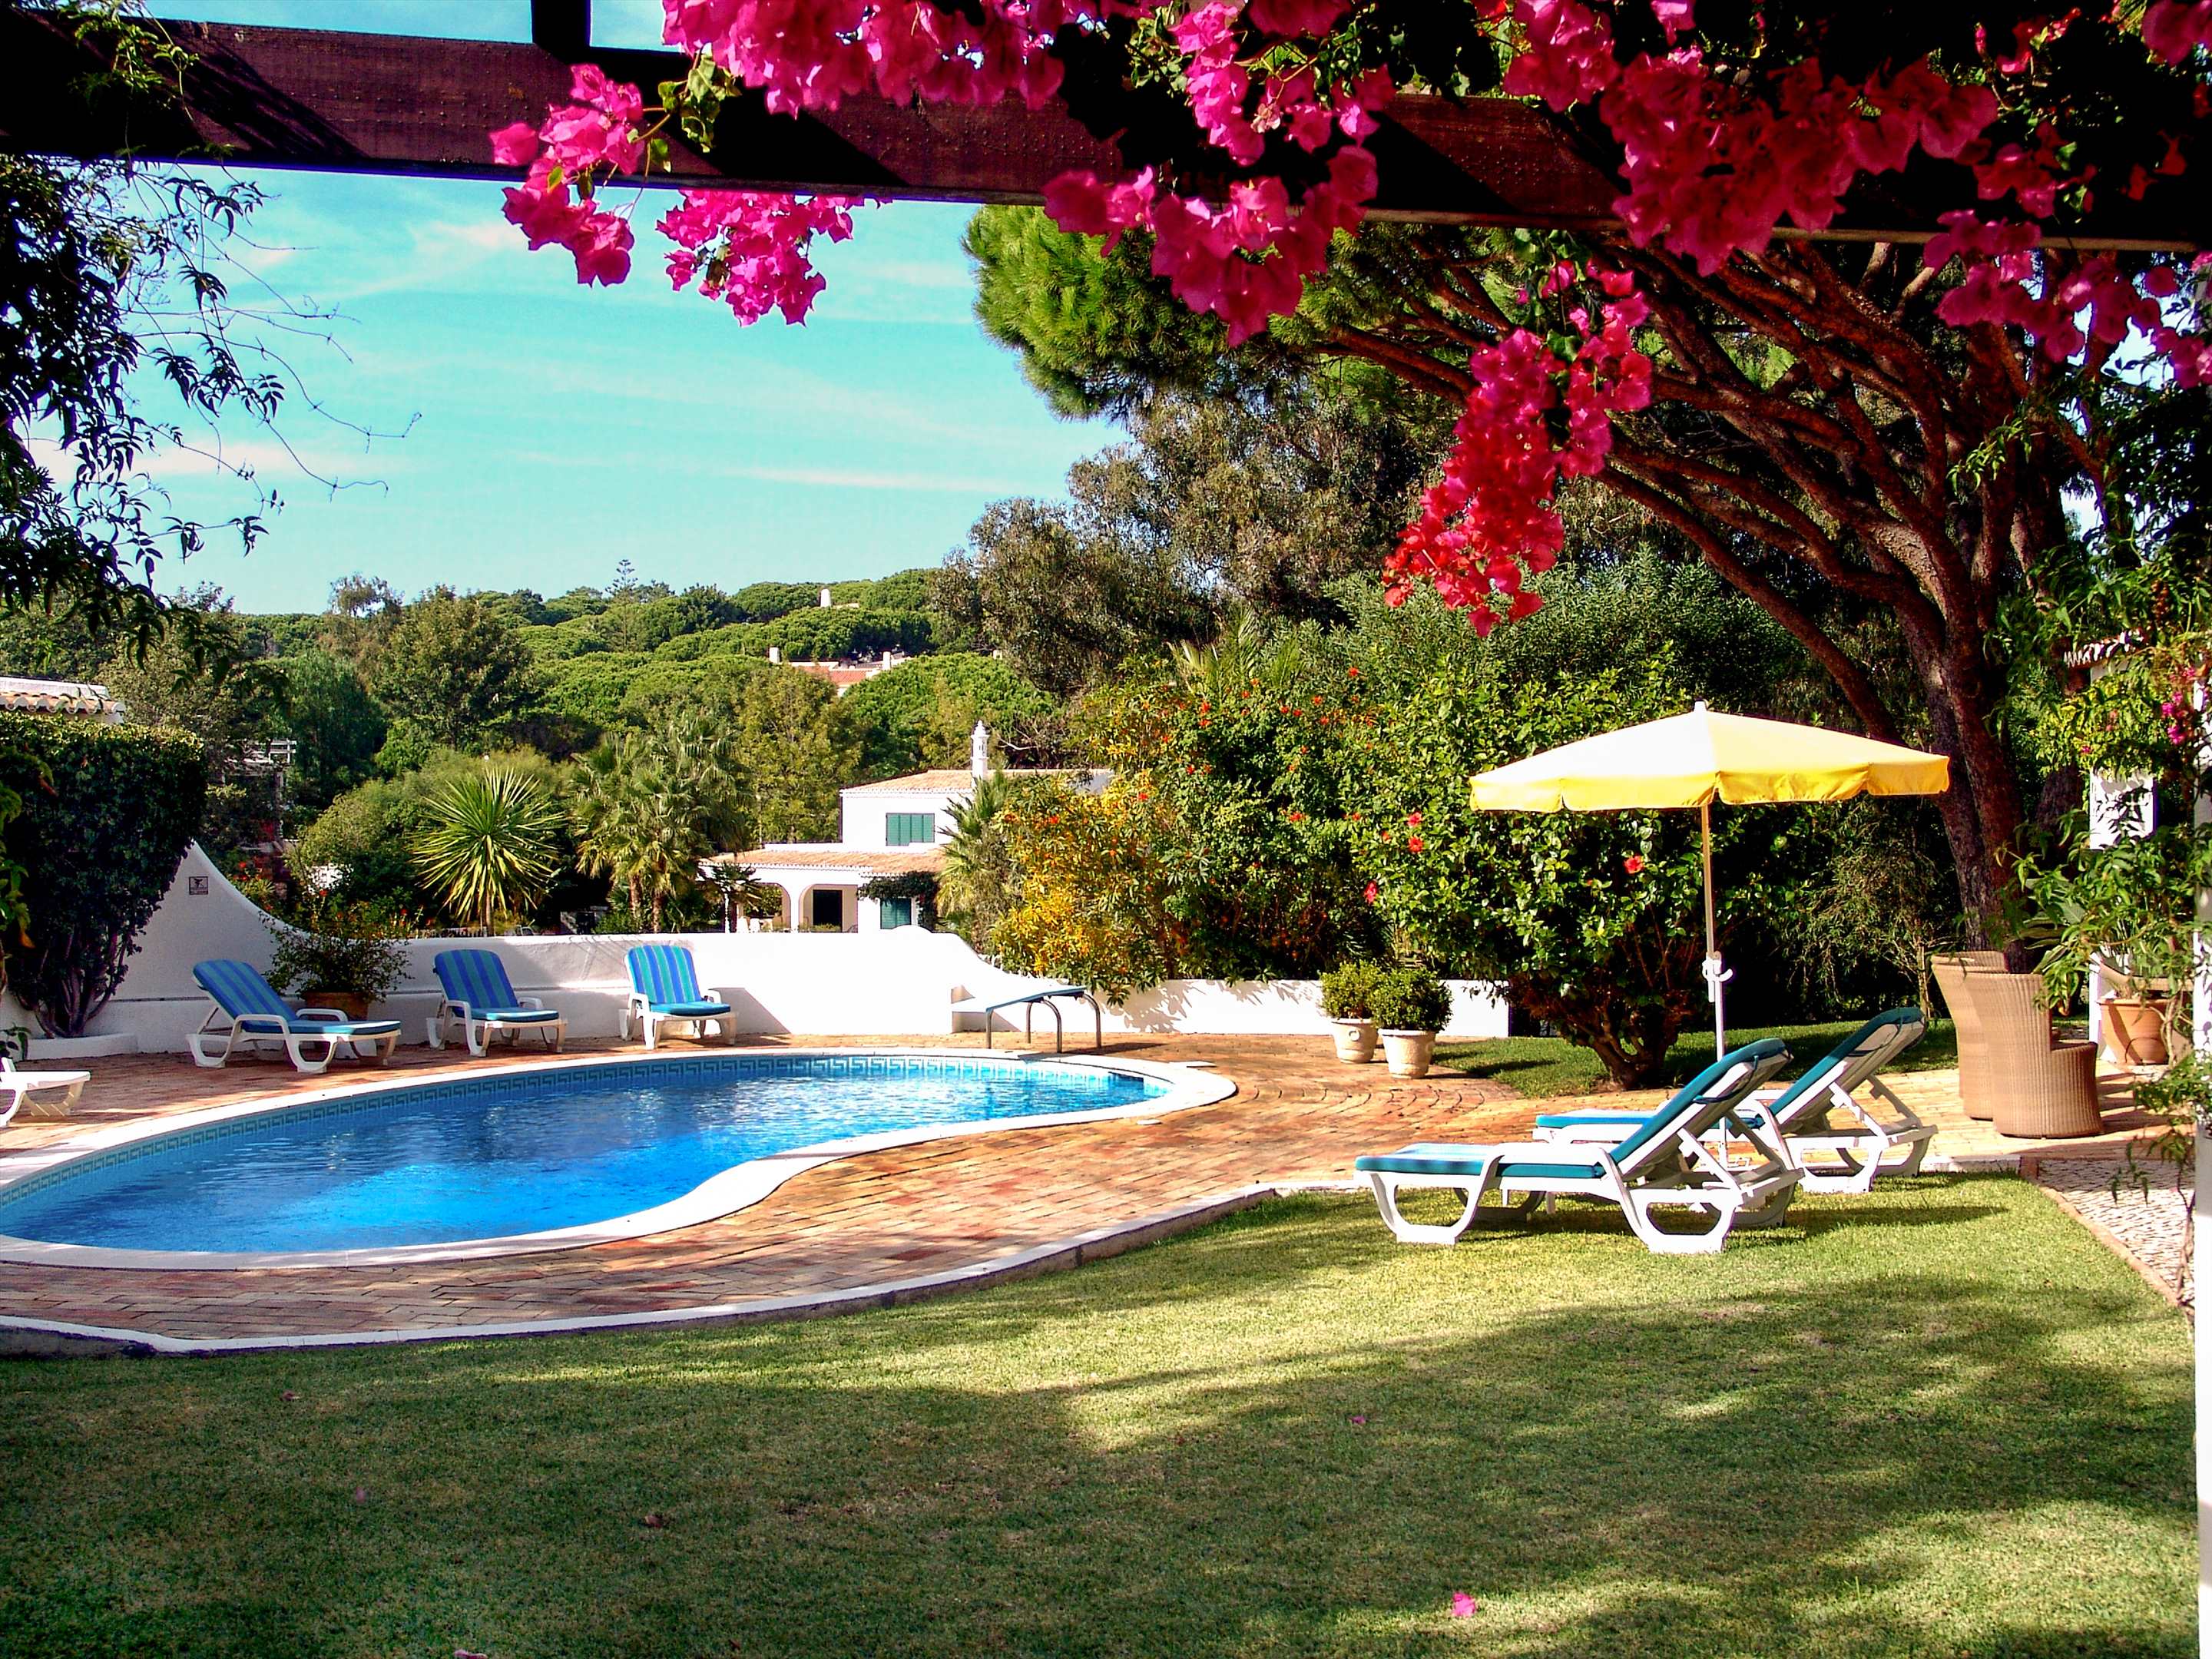 Villa Das Felicidades, 4 bedroom villa in Vale do Lobo, Algarve Photo #4